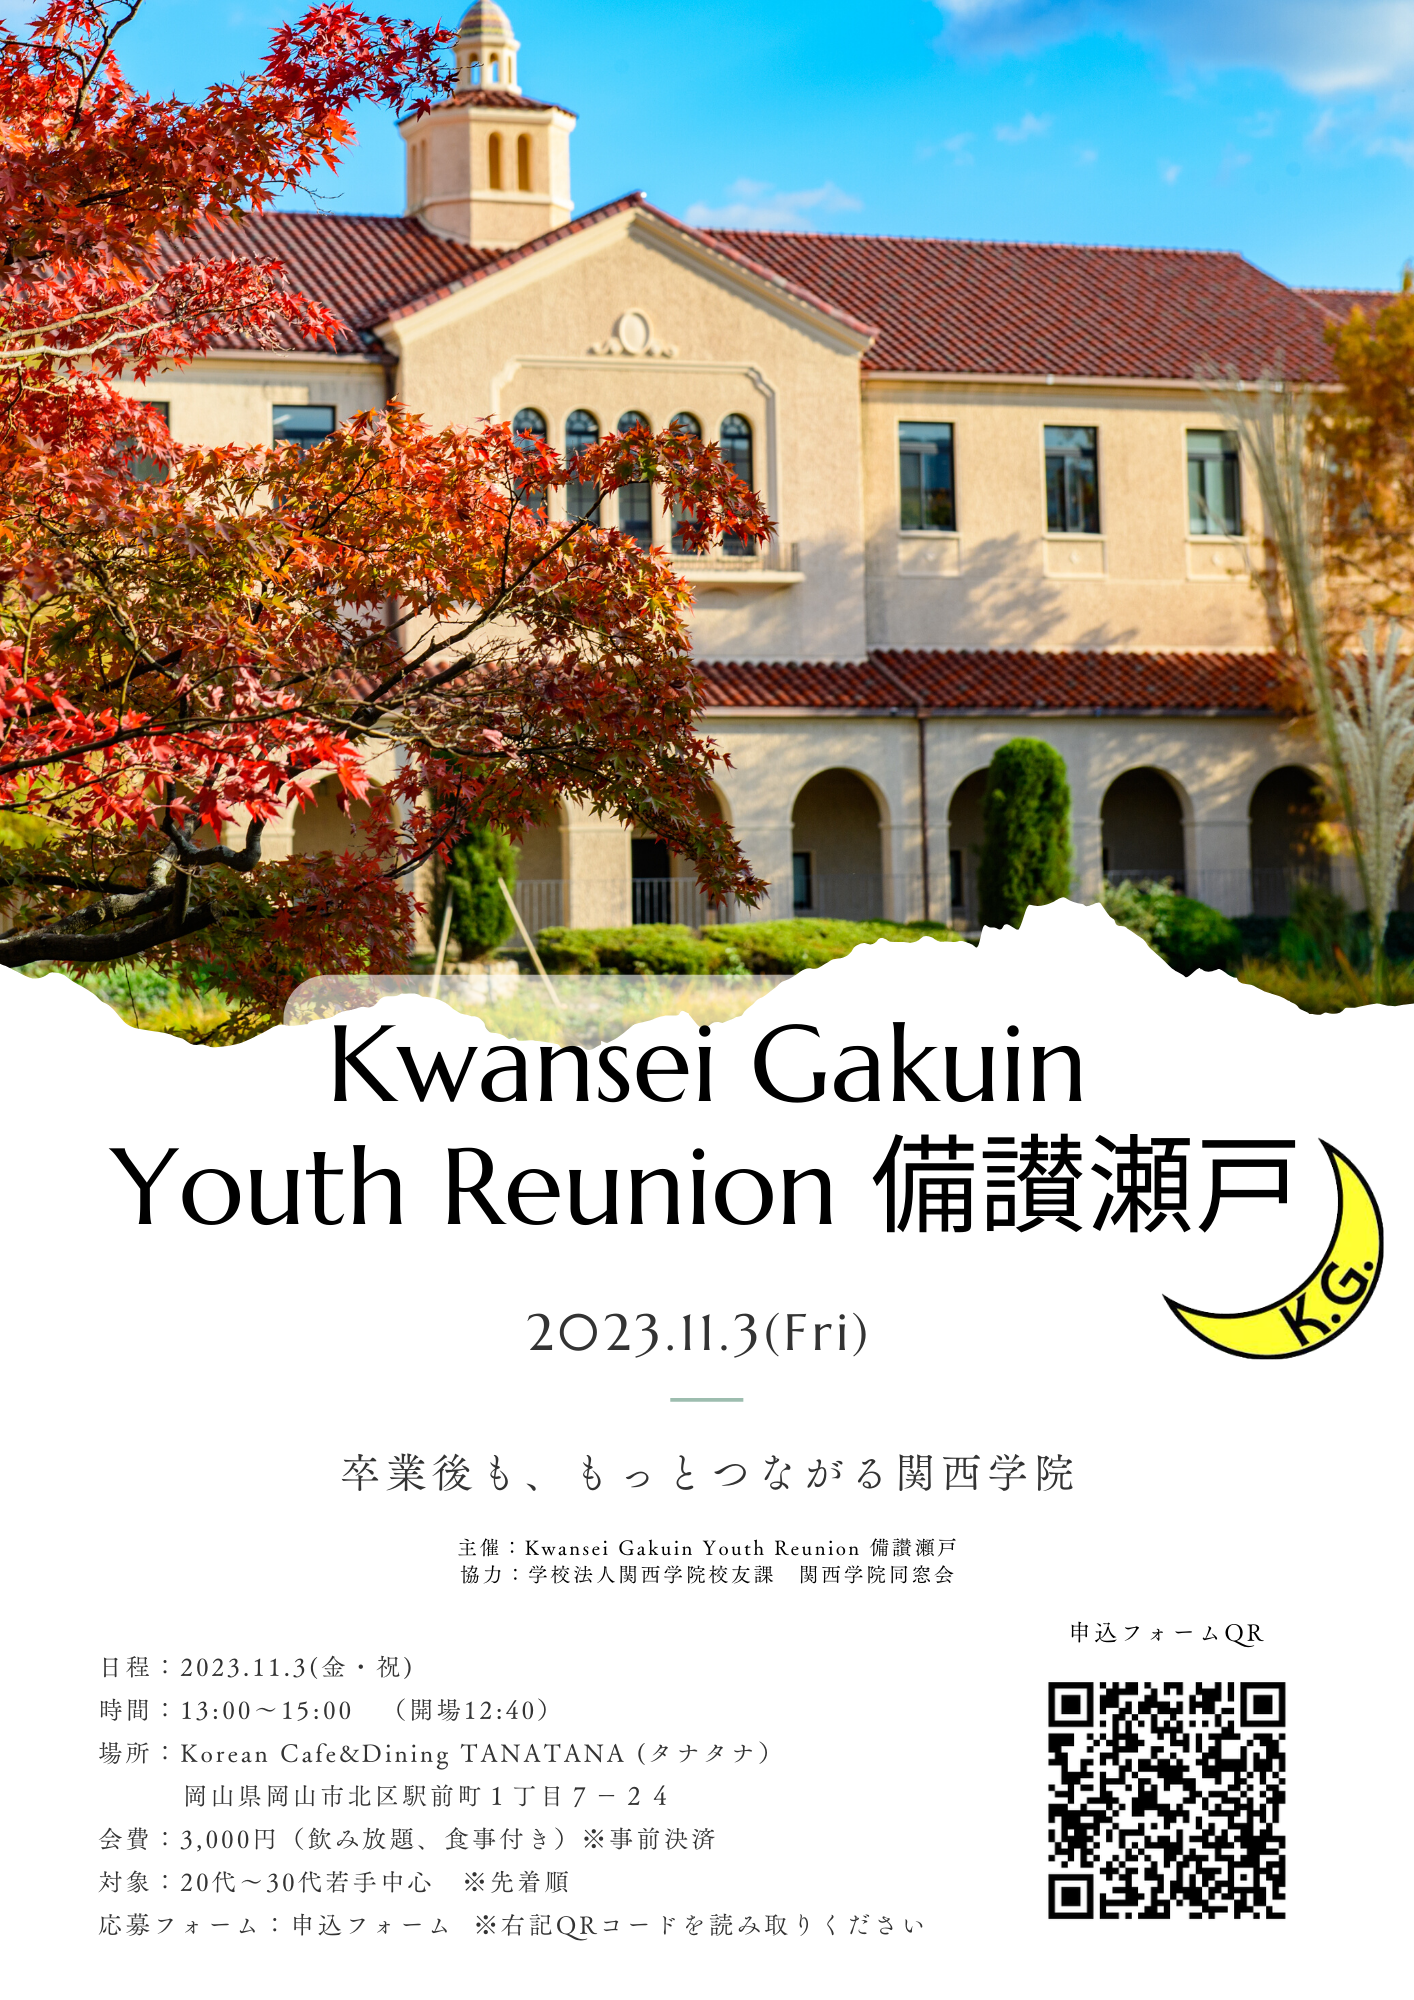 【Kwansei Gakuin Youth Reunion 備讃瀬戸】 開催のお知らせ